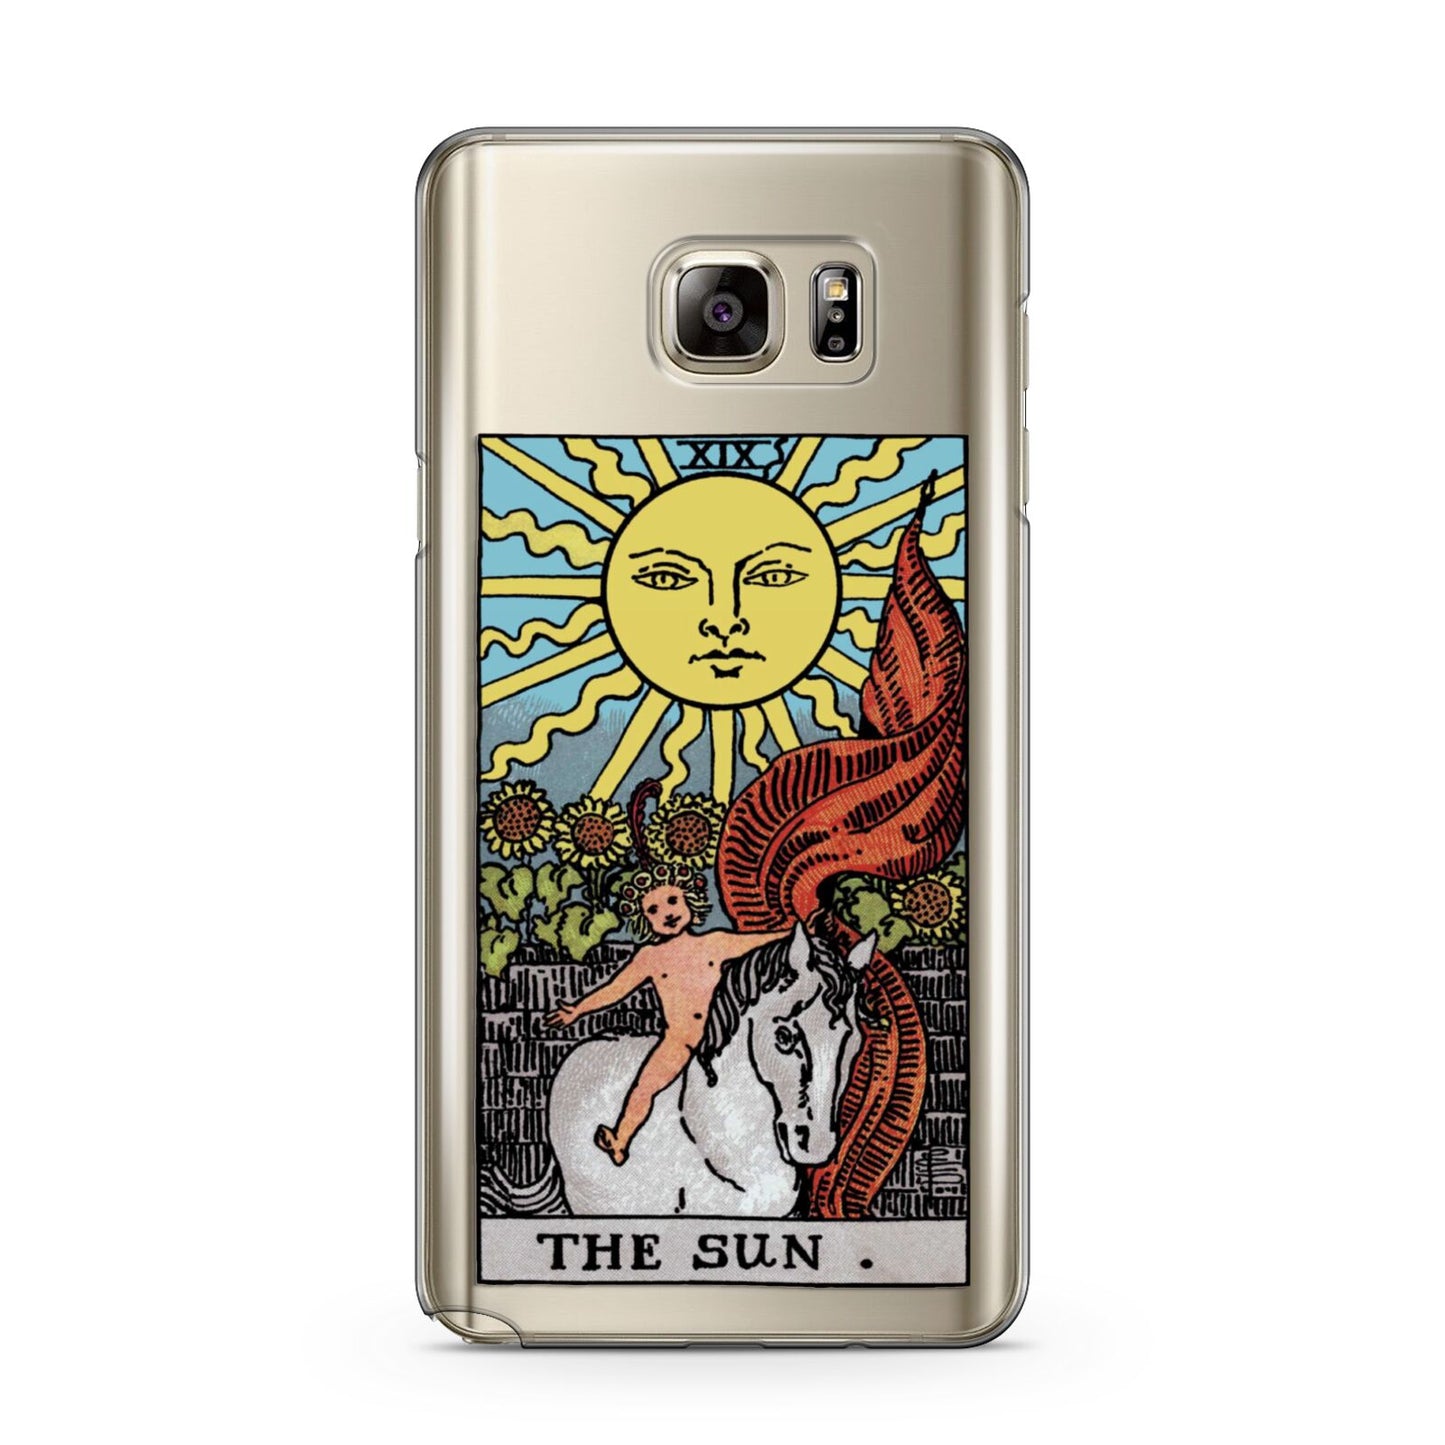 The Sun Tarot Card Samsung Galaxy Note 5 Case